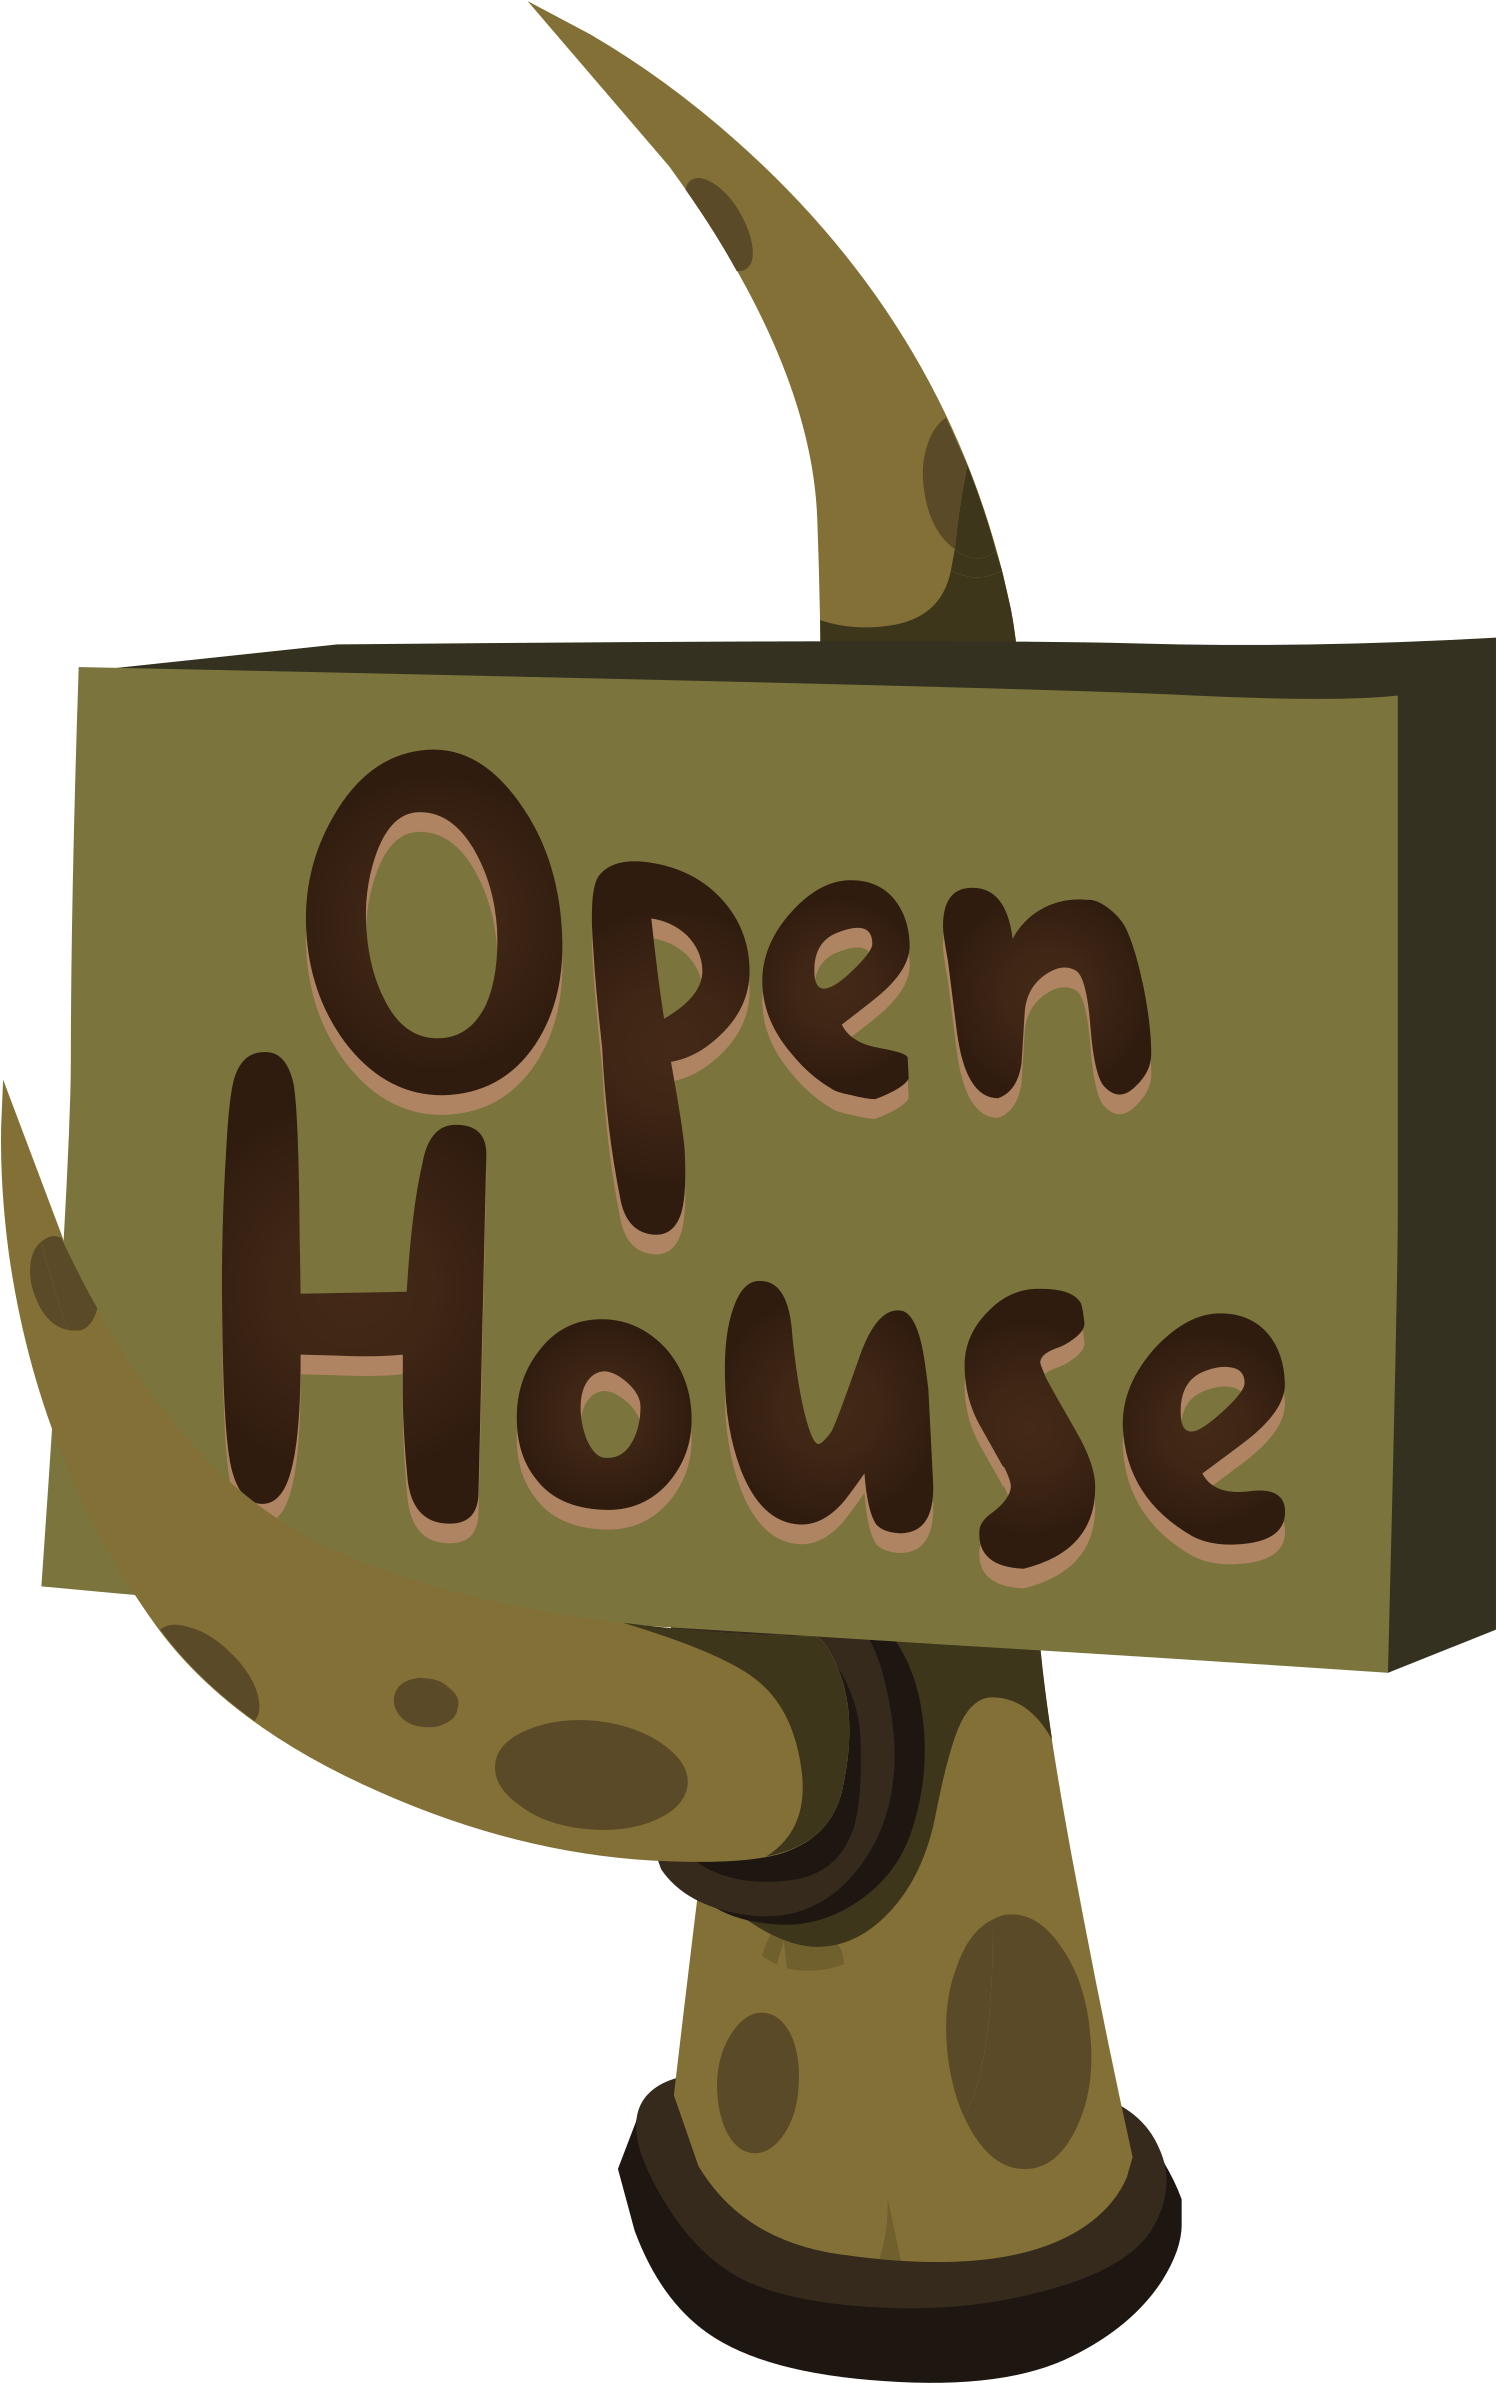 Firebog Open House Sign - Clip Art (1495x2400)